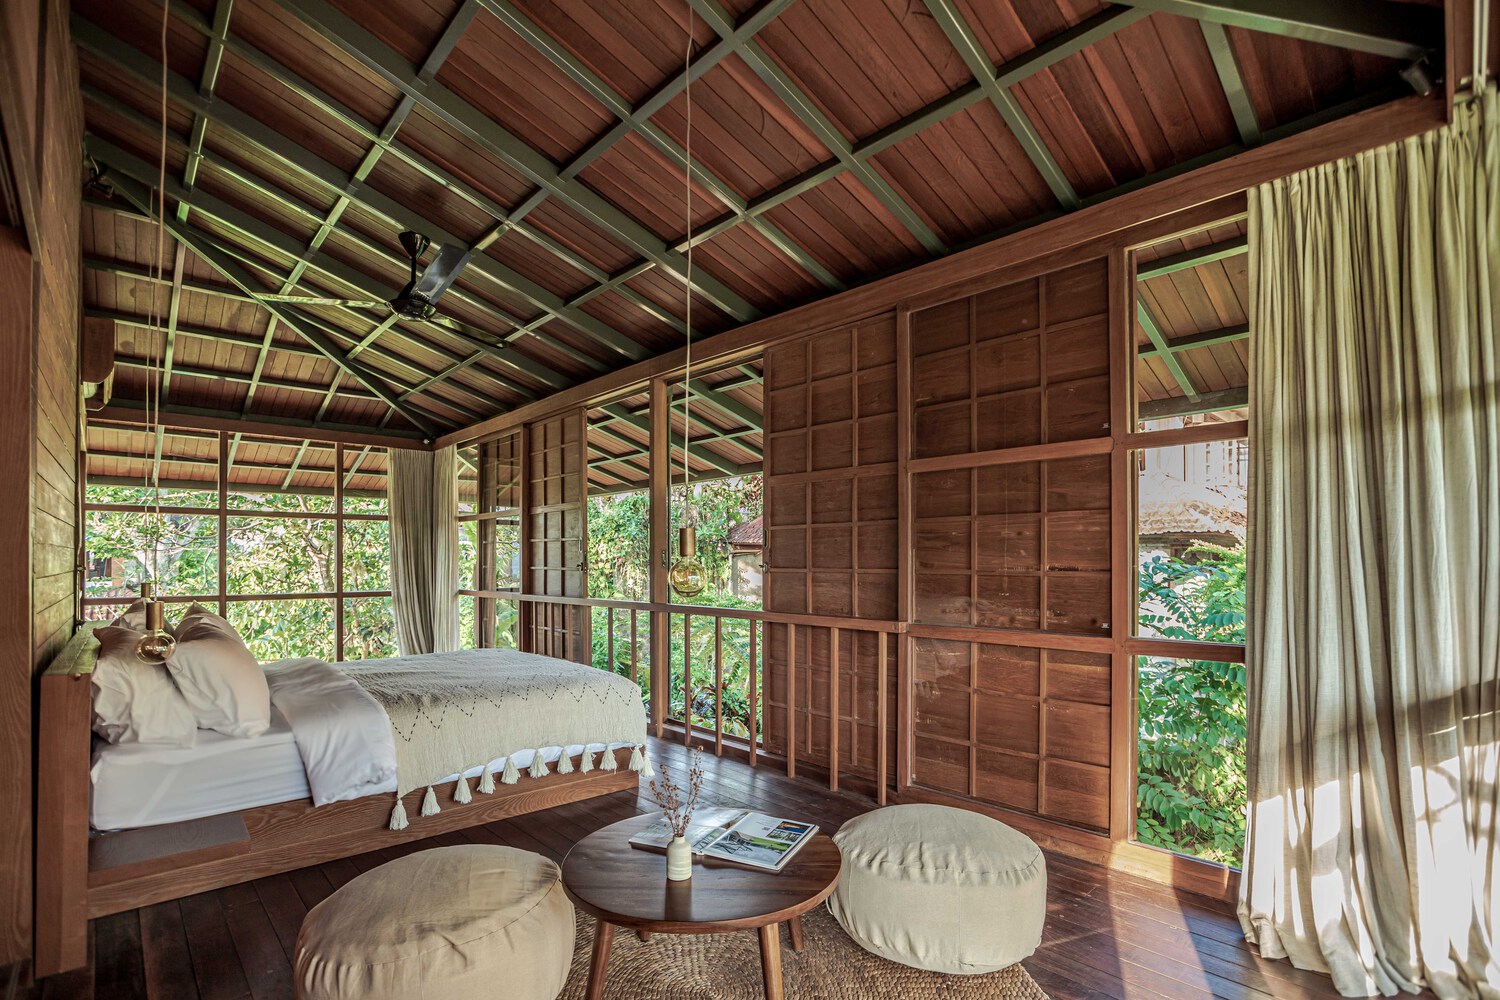 Ngôi nhà gỗ hình cái cây độc đáo ở Bali, nằm lọt thỏm giữa khu vườn nhiệt đới đầy bình yên - Ảnh 4.